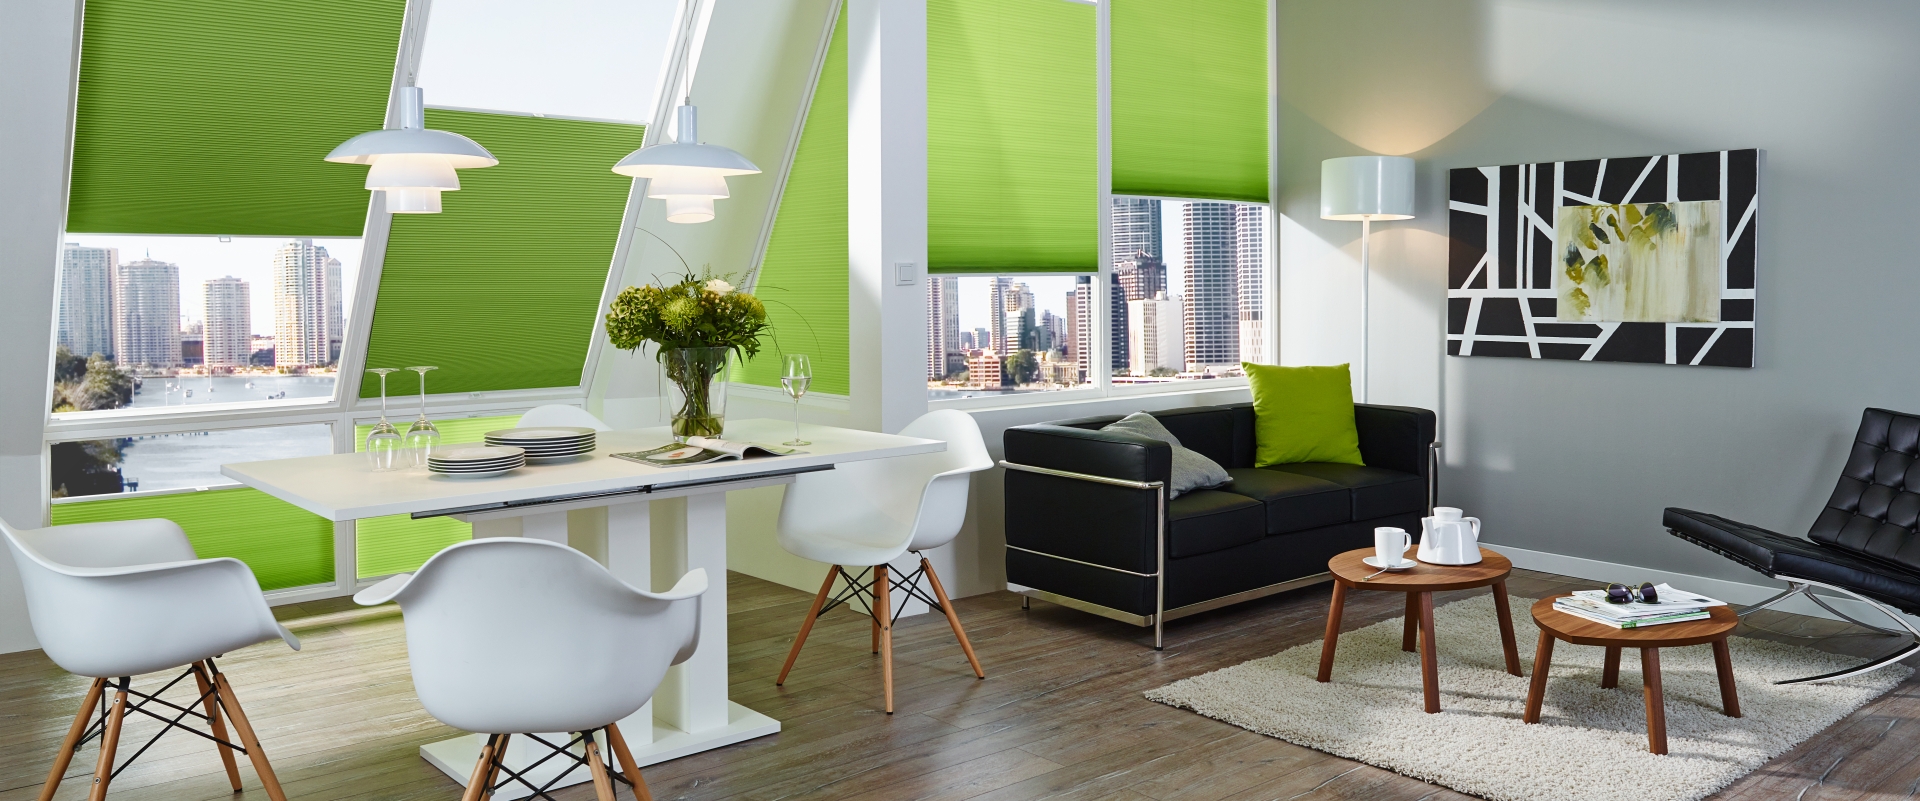 Bild Sonnenschutz Wohnzimmer grün